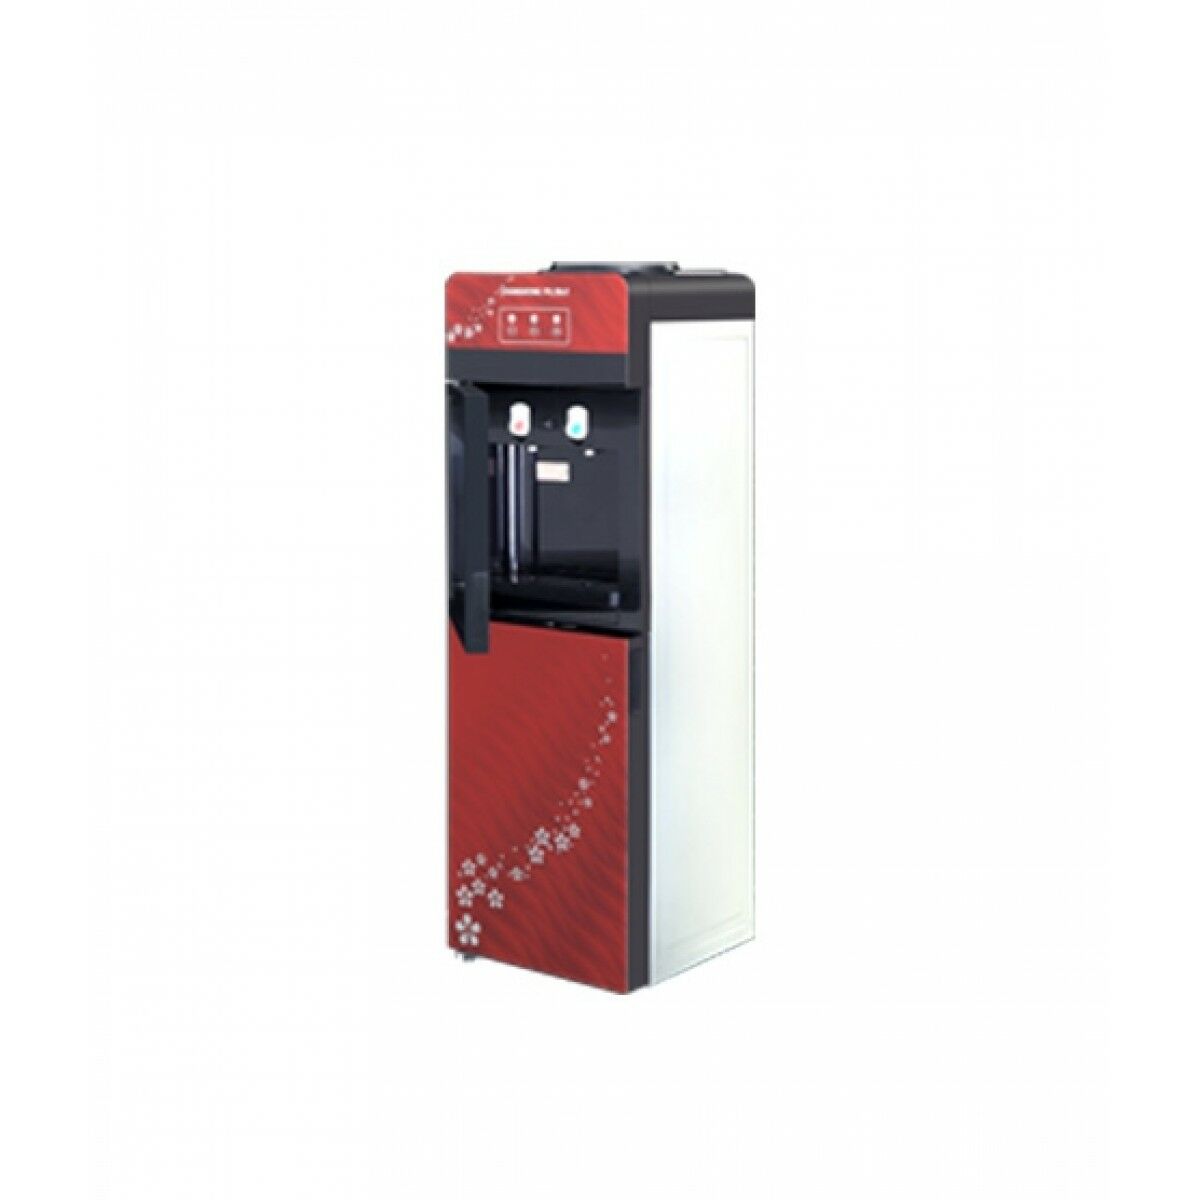 Changhong Ruba Water Dispenser (WD-CR55G) Price in Pakistan | Buy Changhong  Ruba Water Dispenser with Refrigerator | iShopping.pk